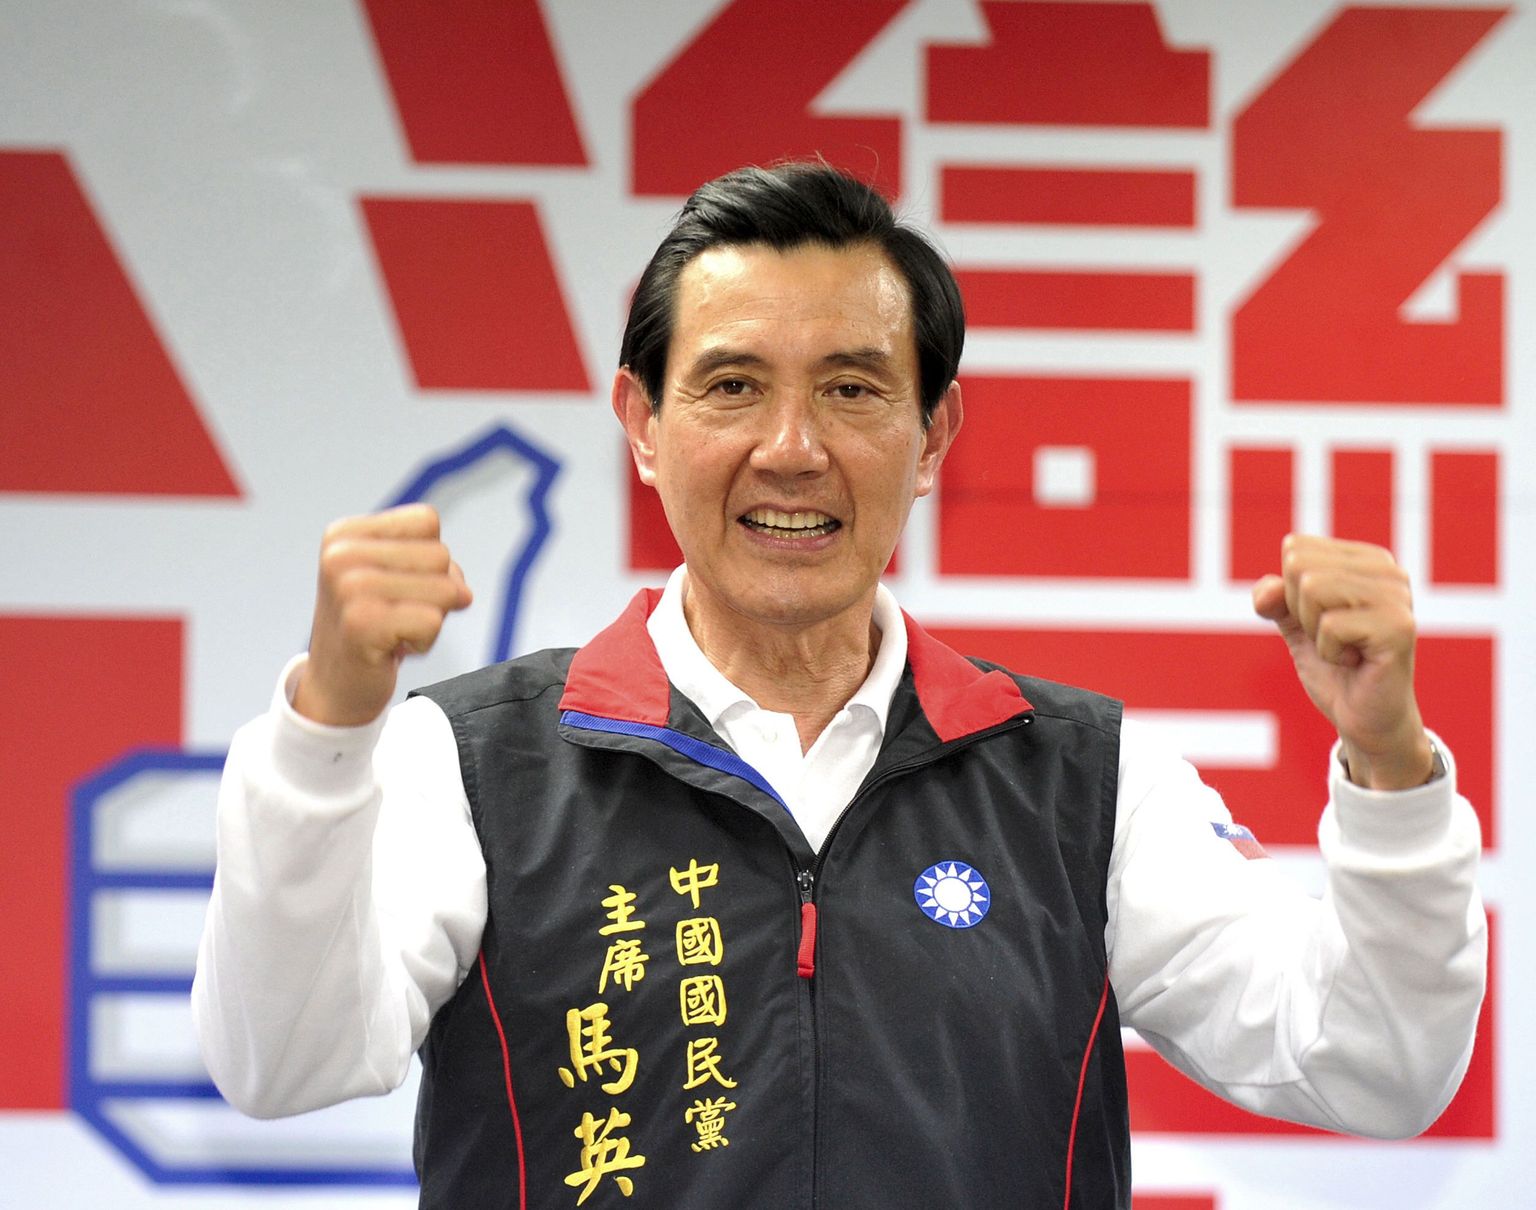 Taiwani president Ma Ying-jeou